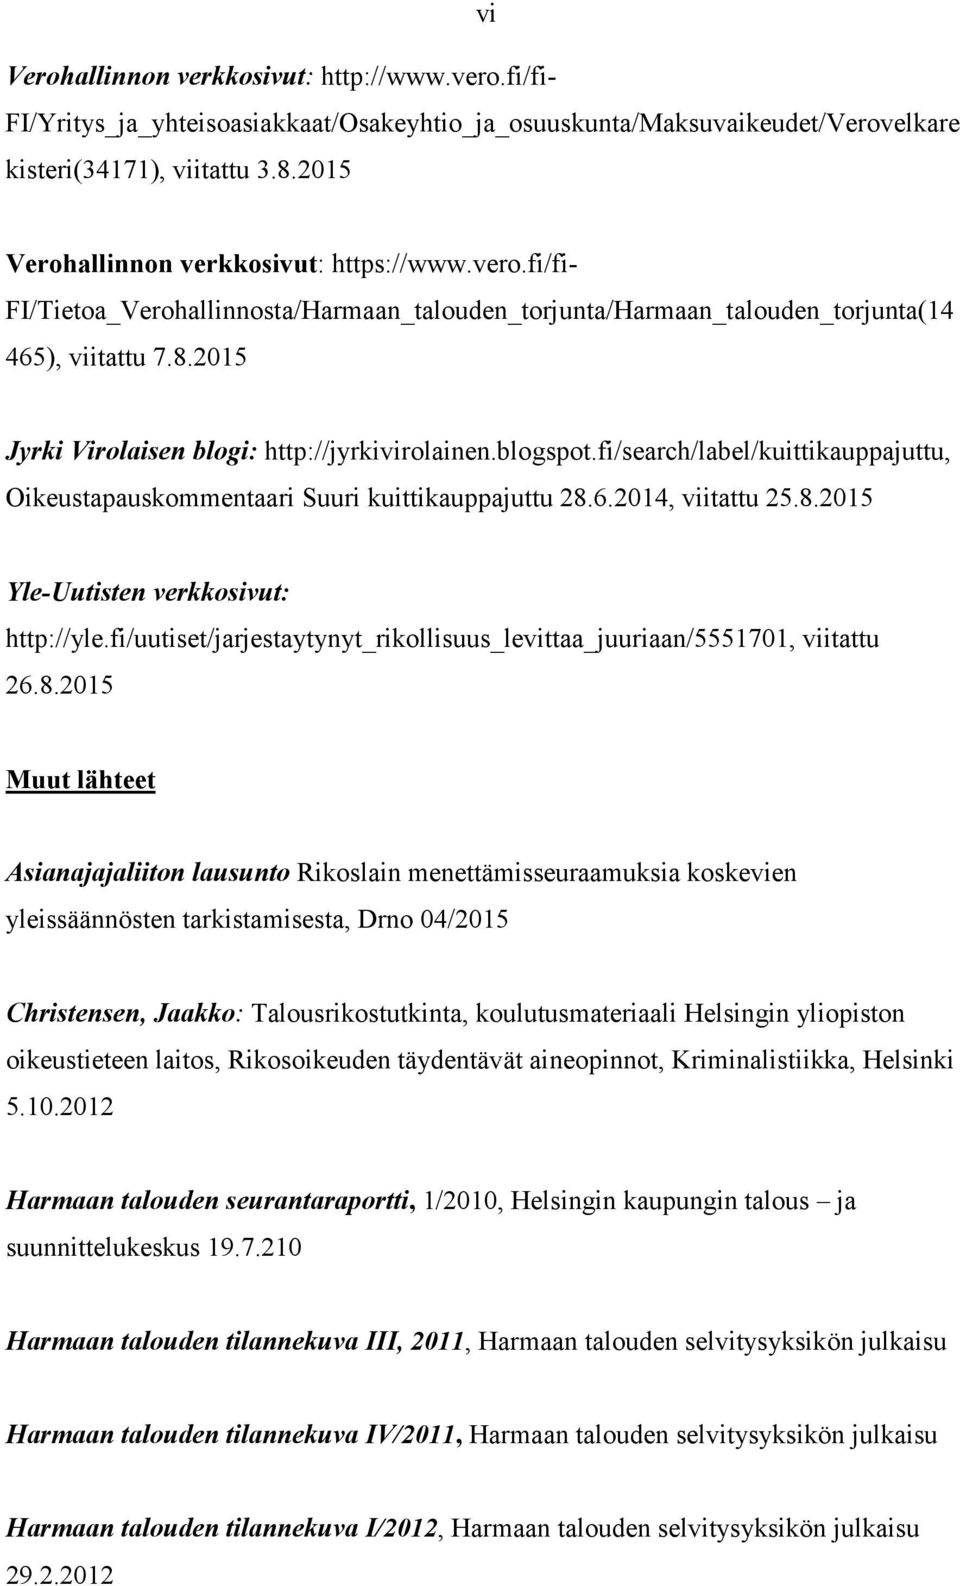 2015 Jyrki Virolaisen blogi: http://jyrkivirolainen.blogspot.fi/search/label/kuittikauppajuttu, Oikeustapauskommentaari Suuri kuittikauppajuttu 28.6.2014, viitattu 25.8.2015 Yle-Uutisten verkkosivut: http://yle.